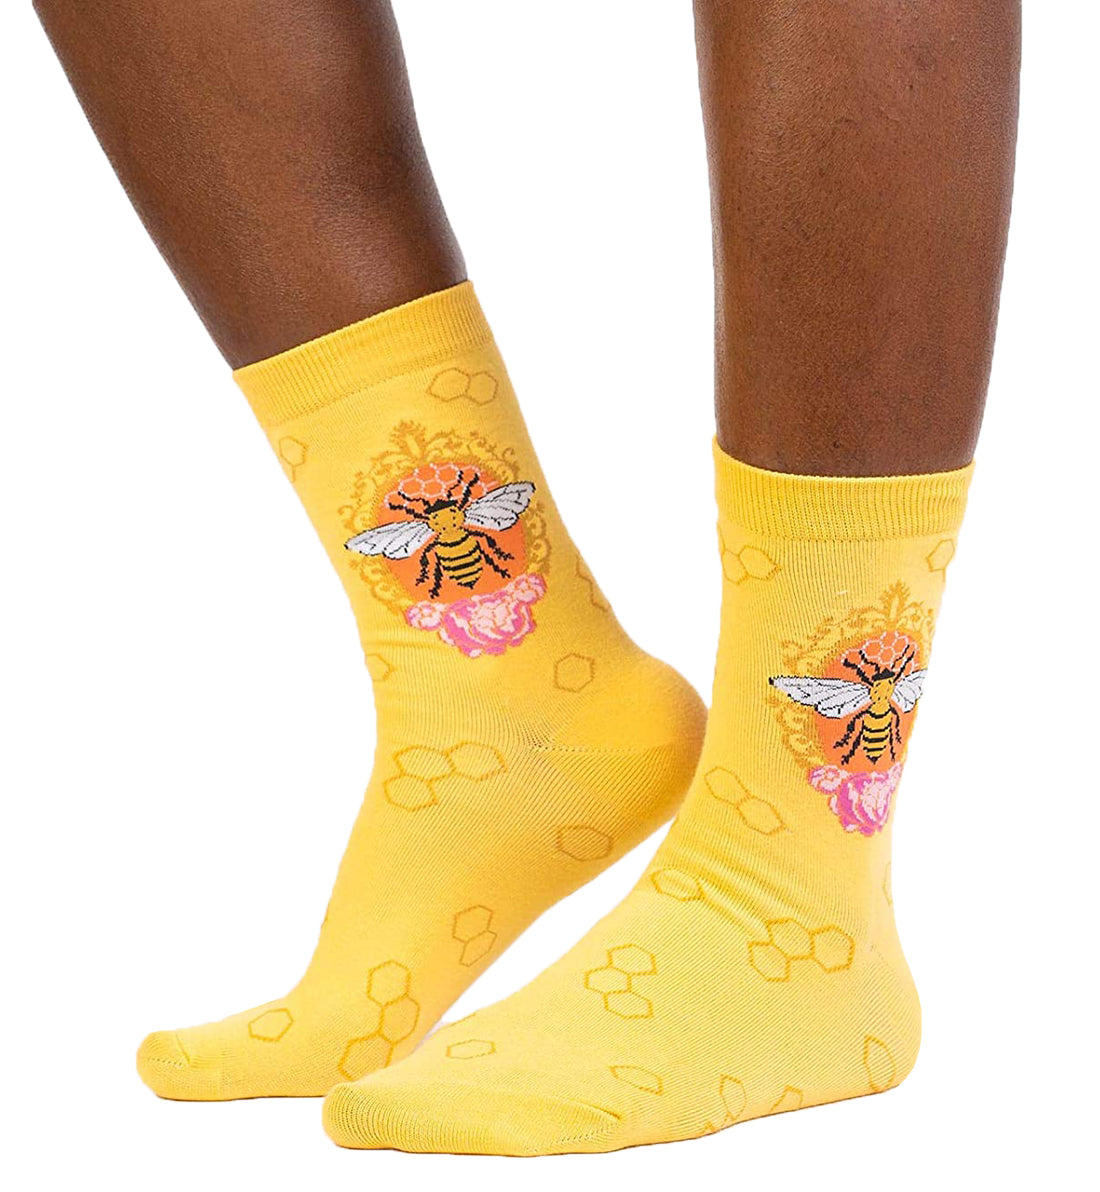 SOCK it to me Women's Crew Socks (w0254),Queen Bee - Queen Bee,One Size